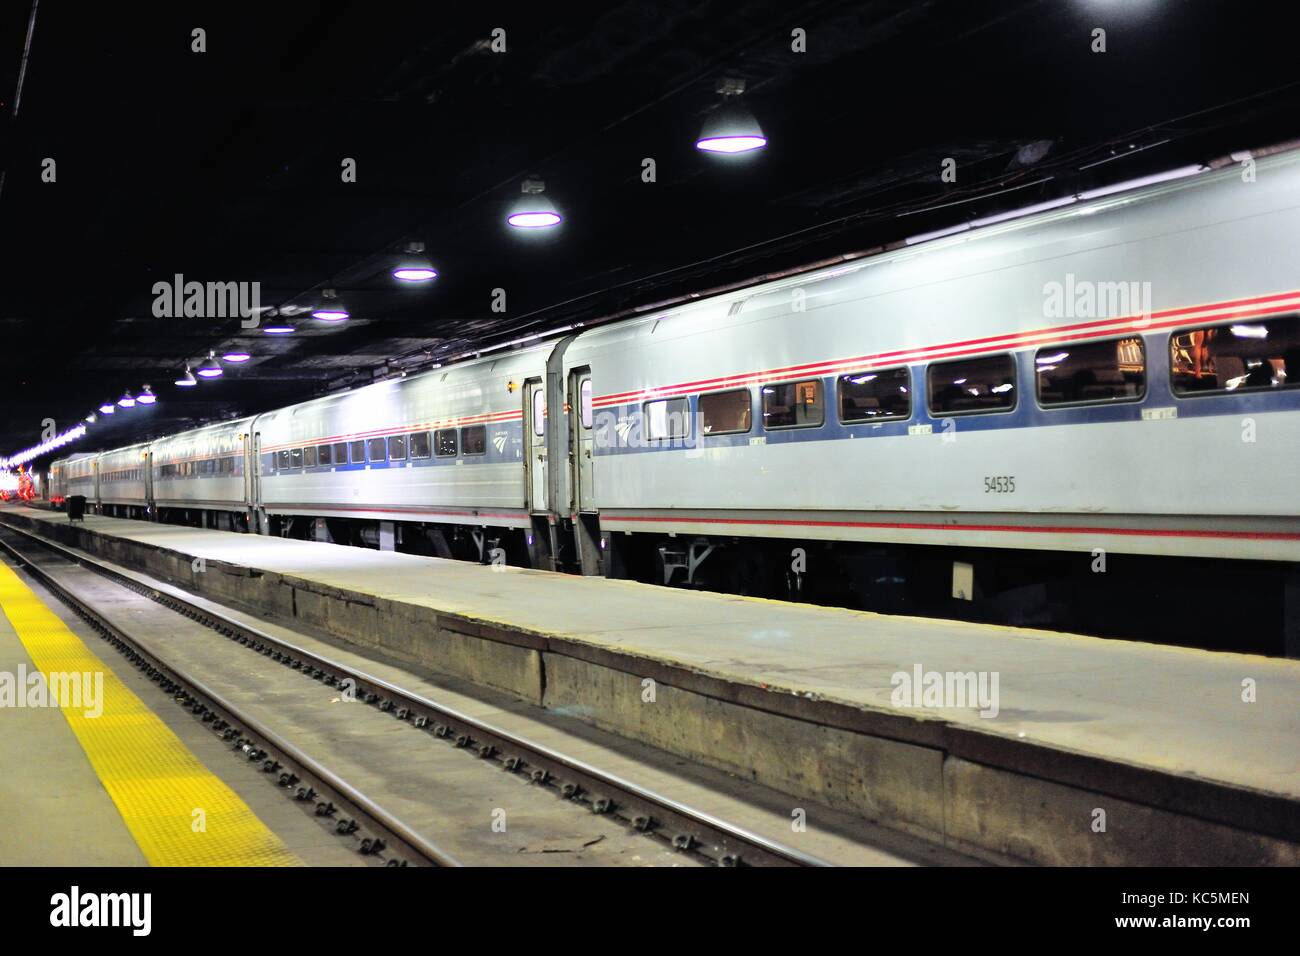 Un train de voyageurs d'Amtrak en attente de départ se trouve sur une piste à l'intérieur de la gare Union Station de Chicago la. Chicago, Illinois, USA. Banque D'Images